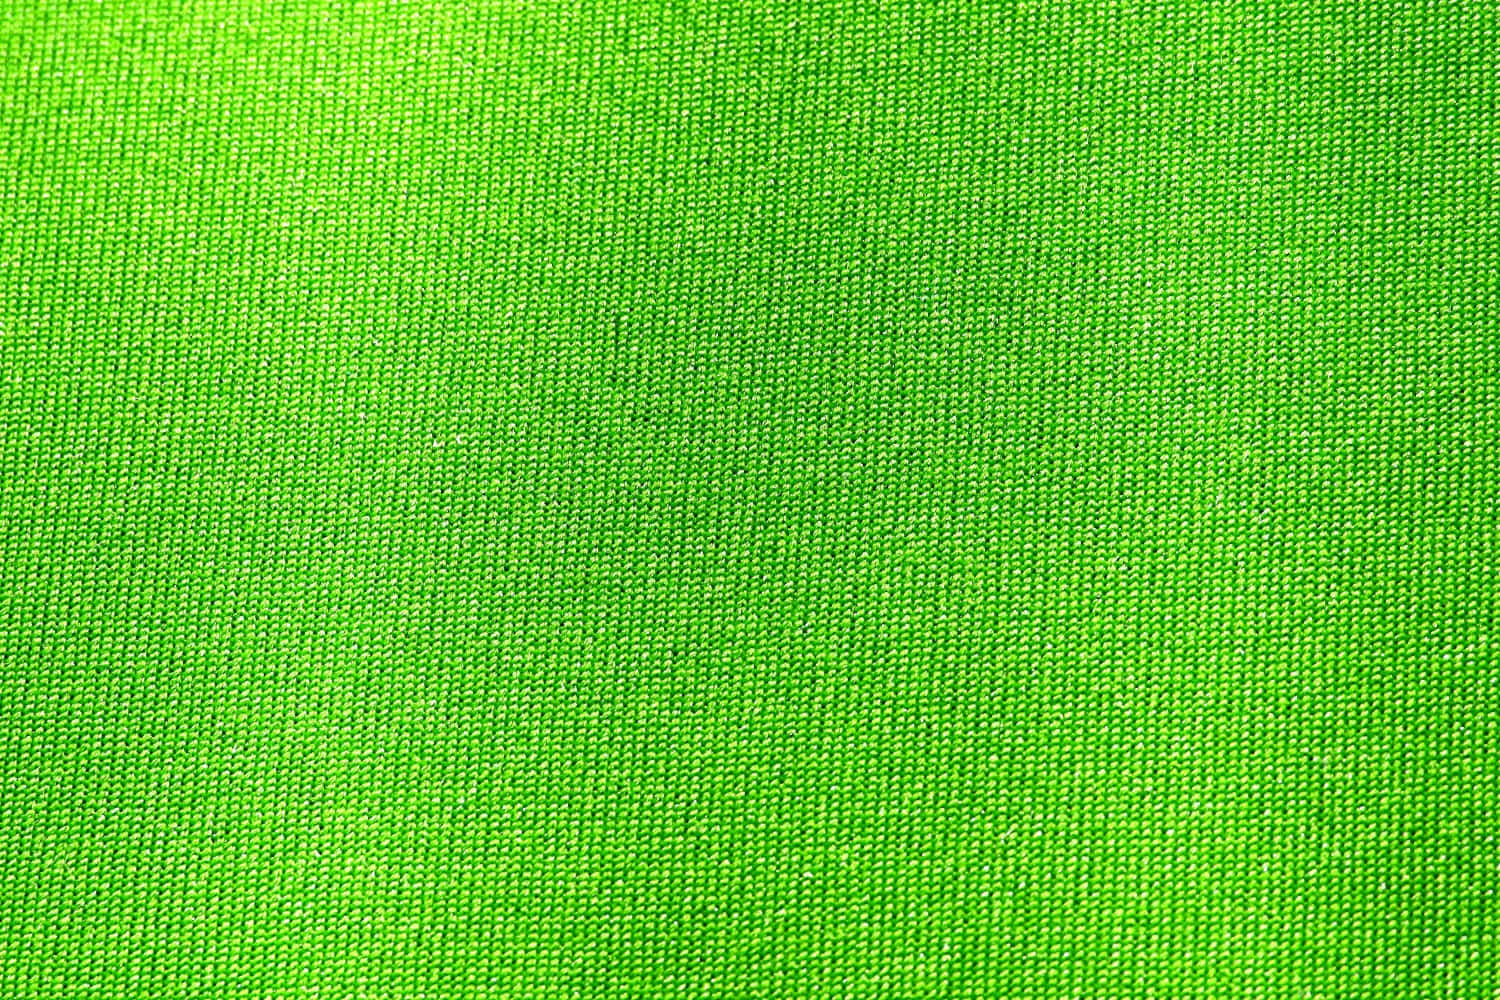 Immaginedi Tessuto Neon Verde